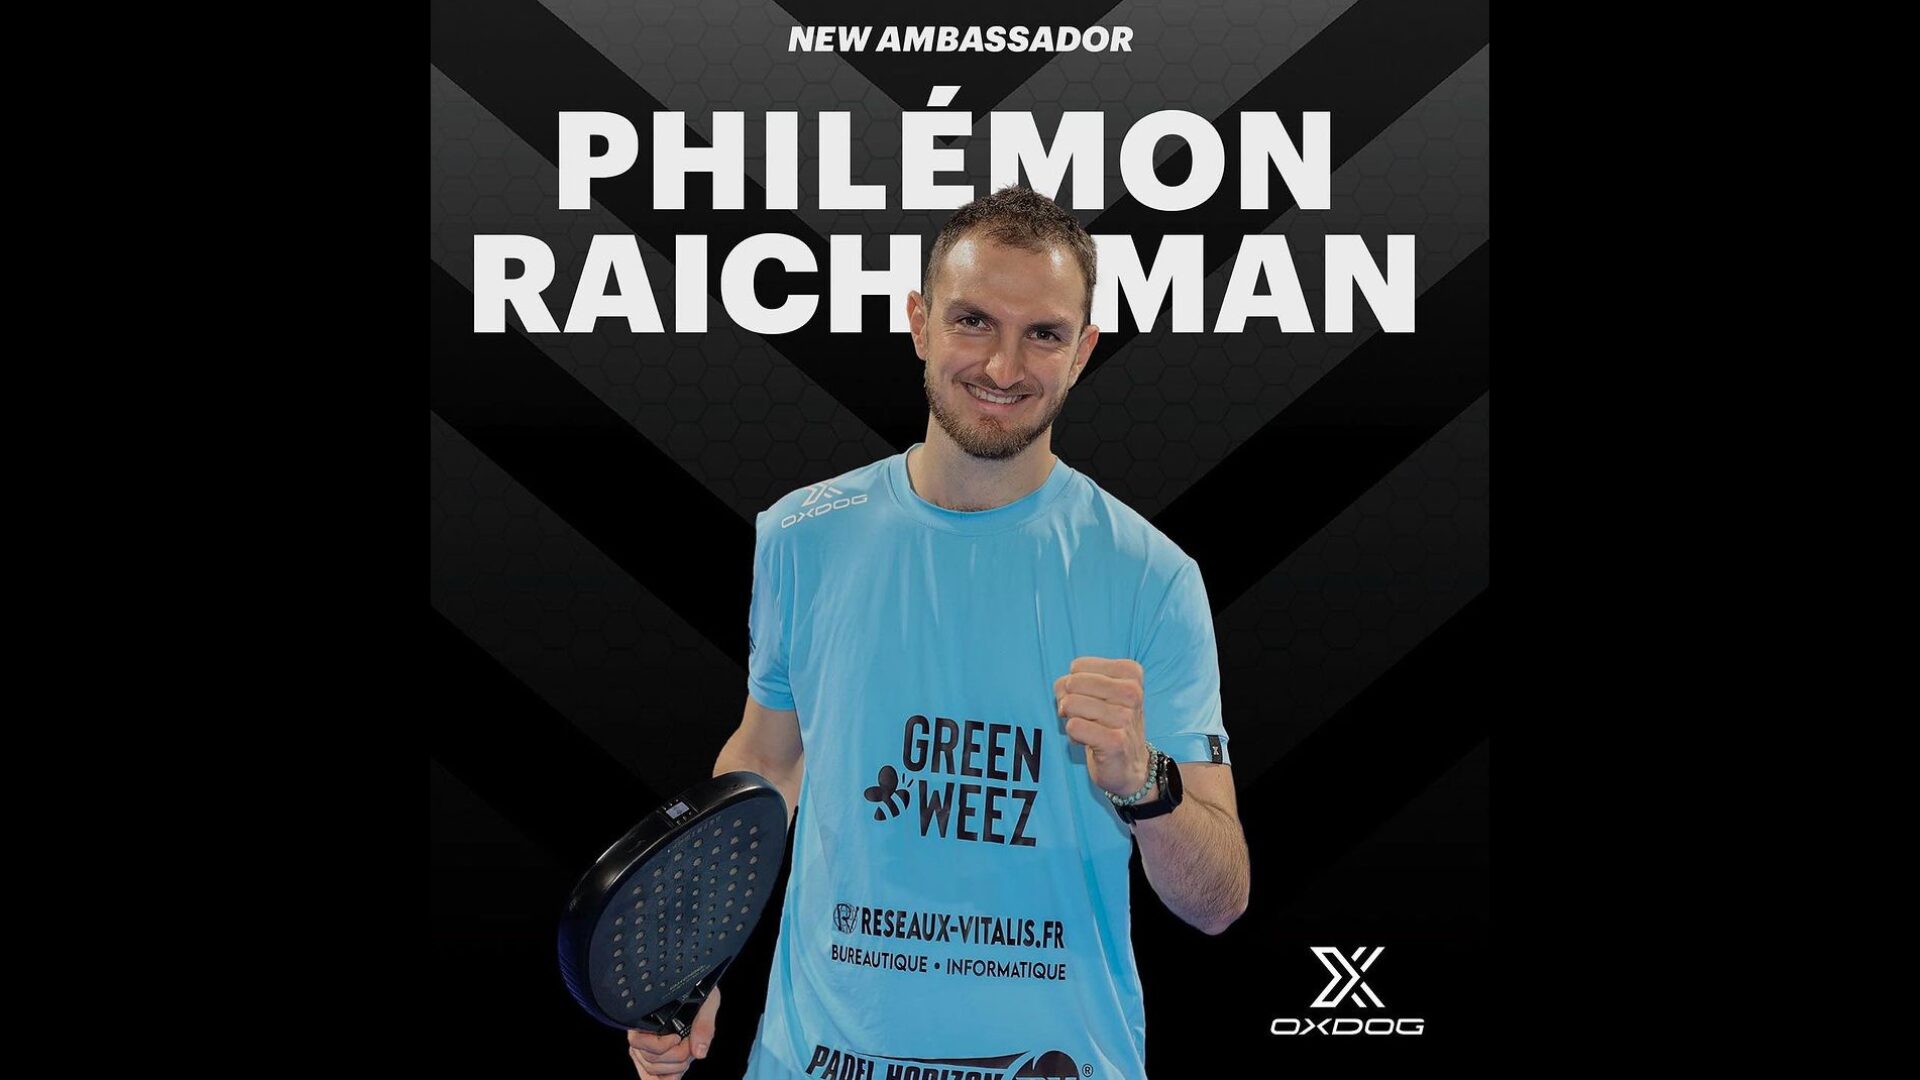 Philémon Raichman si unisce alla squadra Oxdog